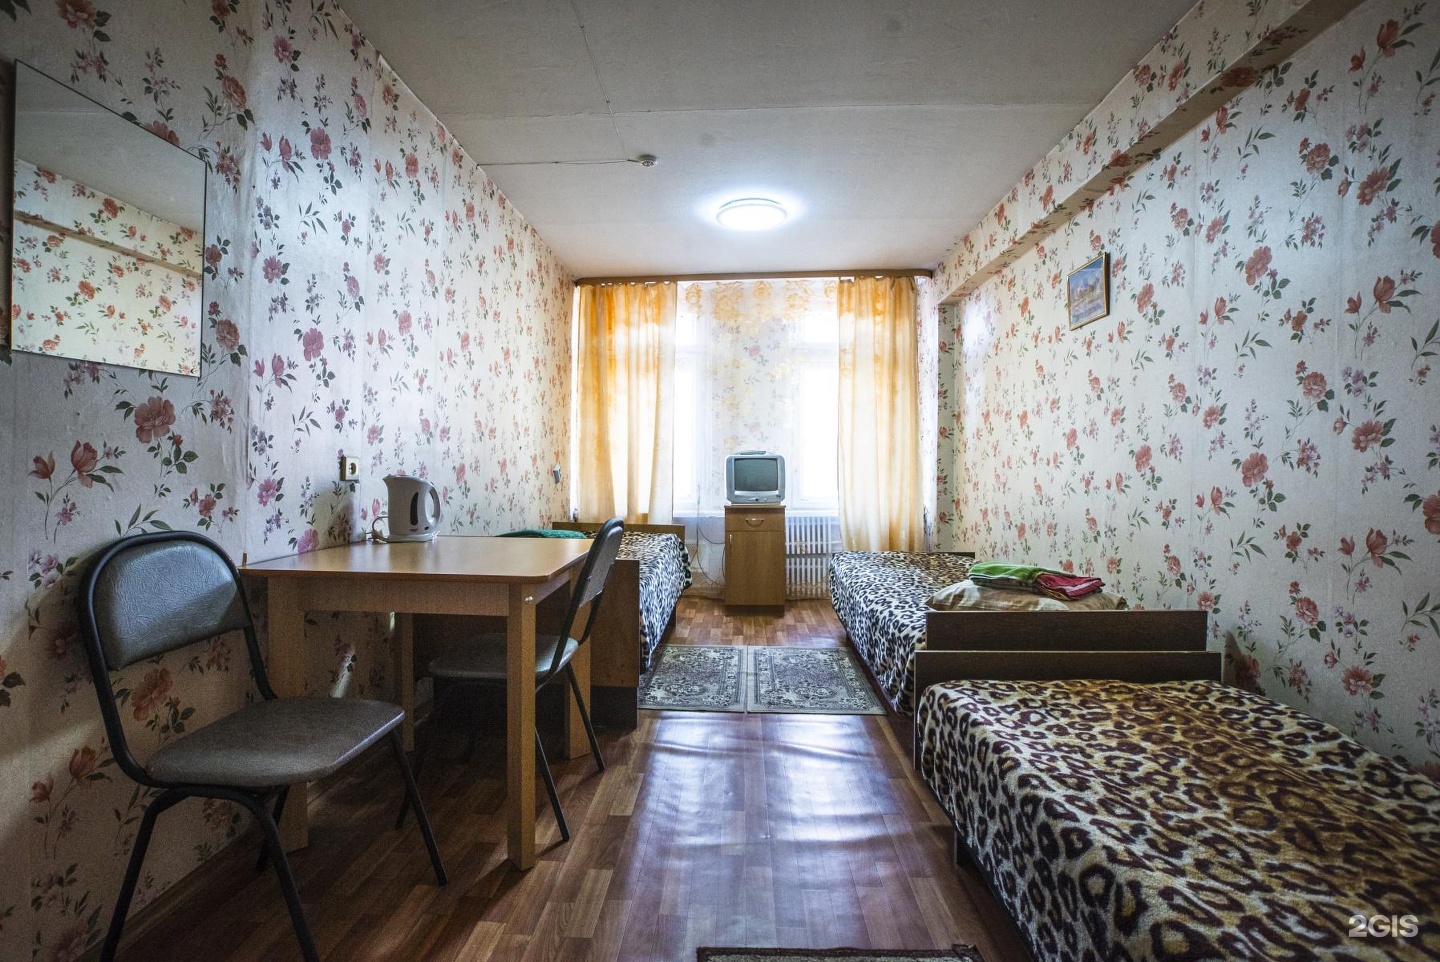 Куплю комнату в общежитии в иркутске